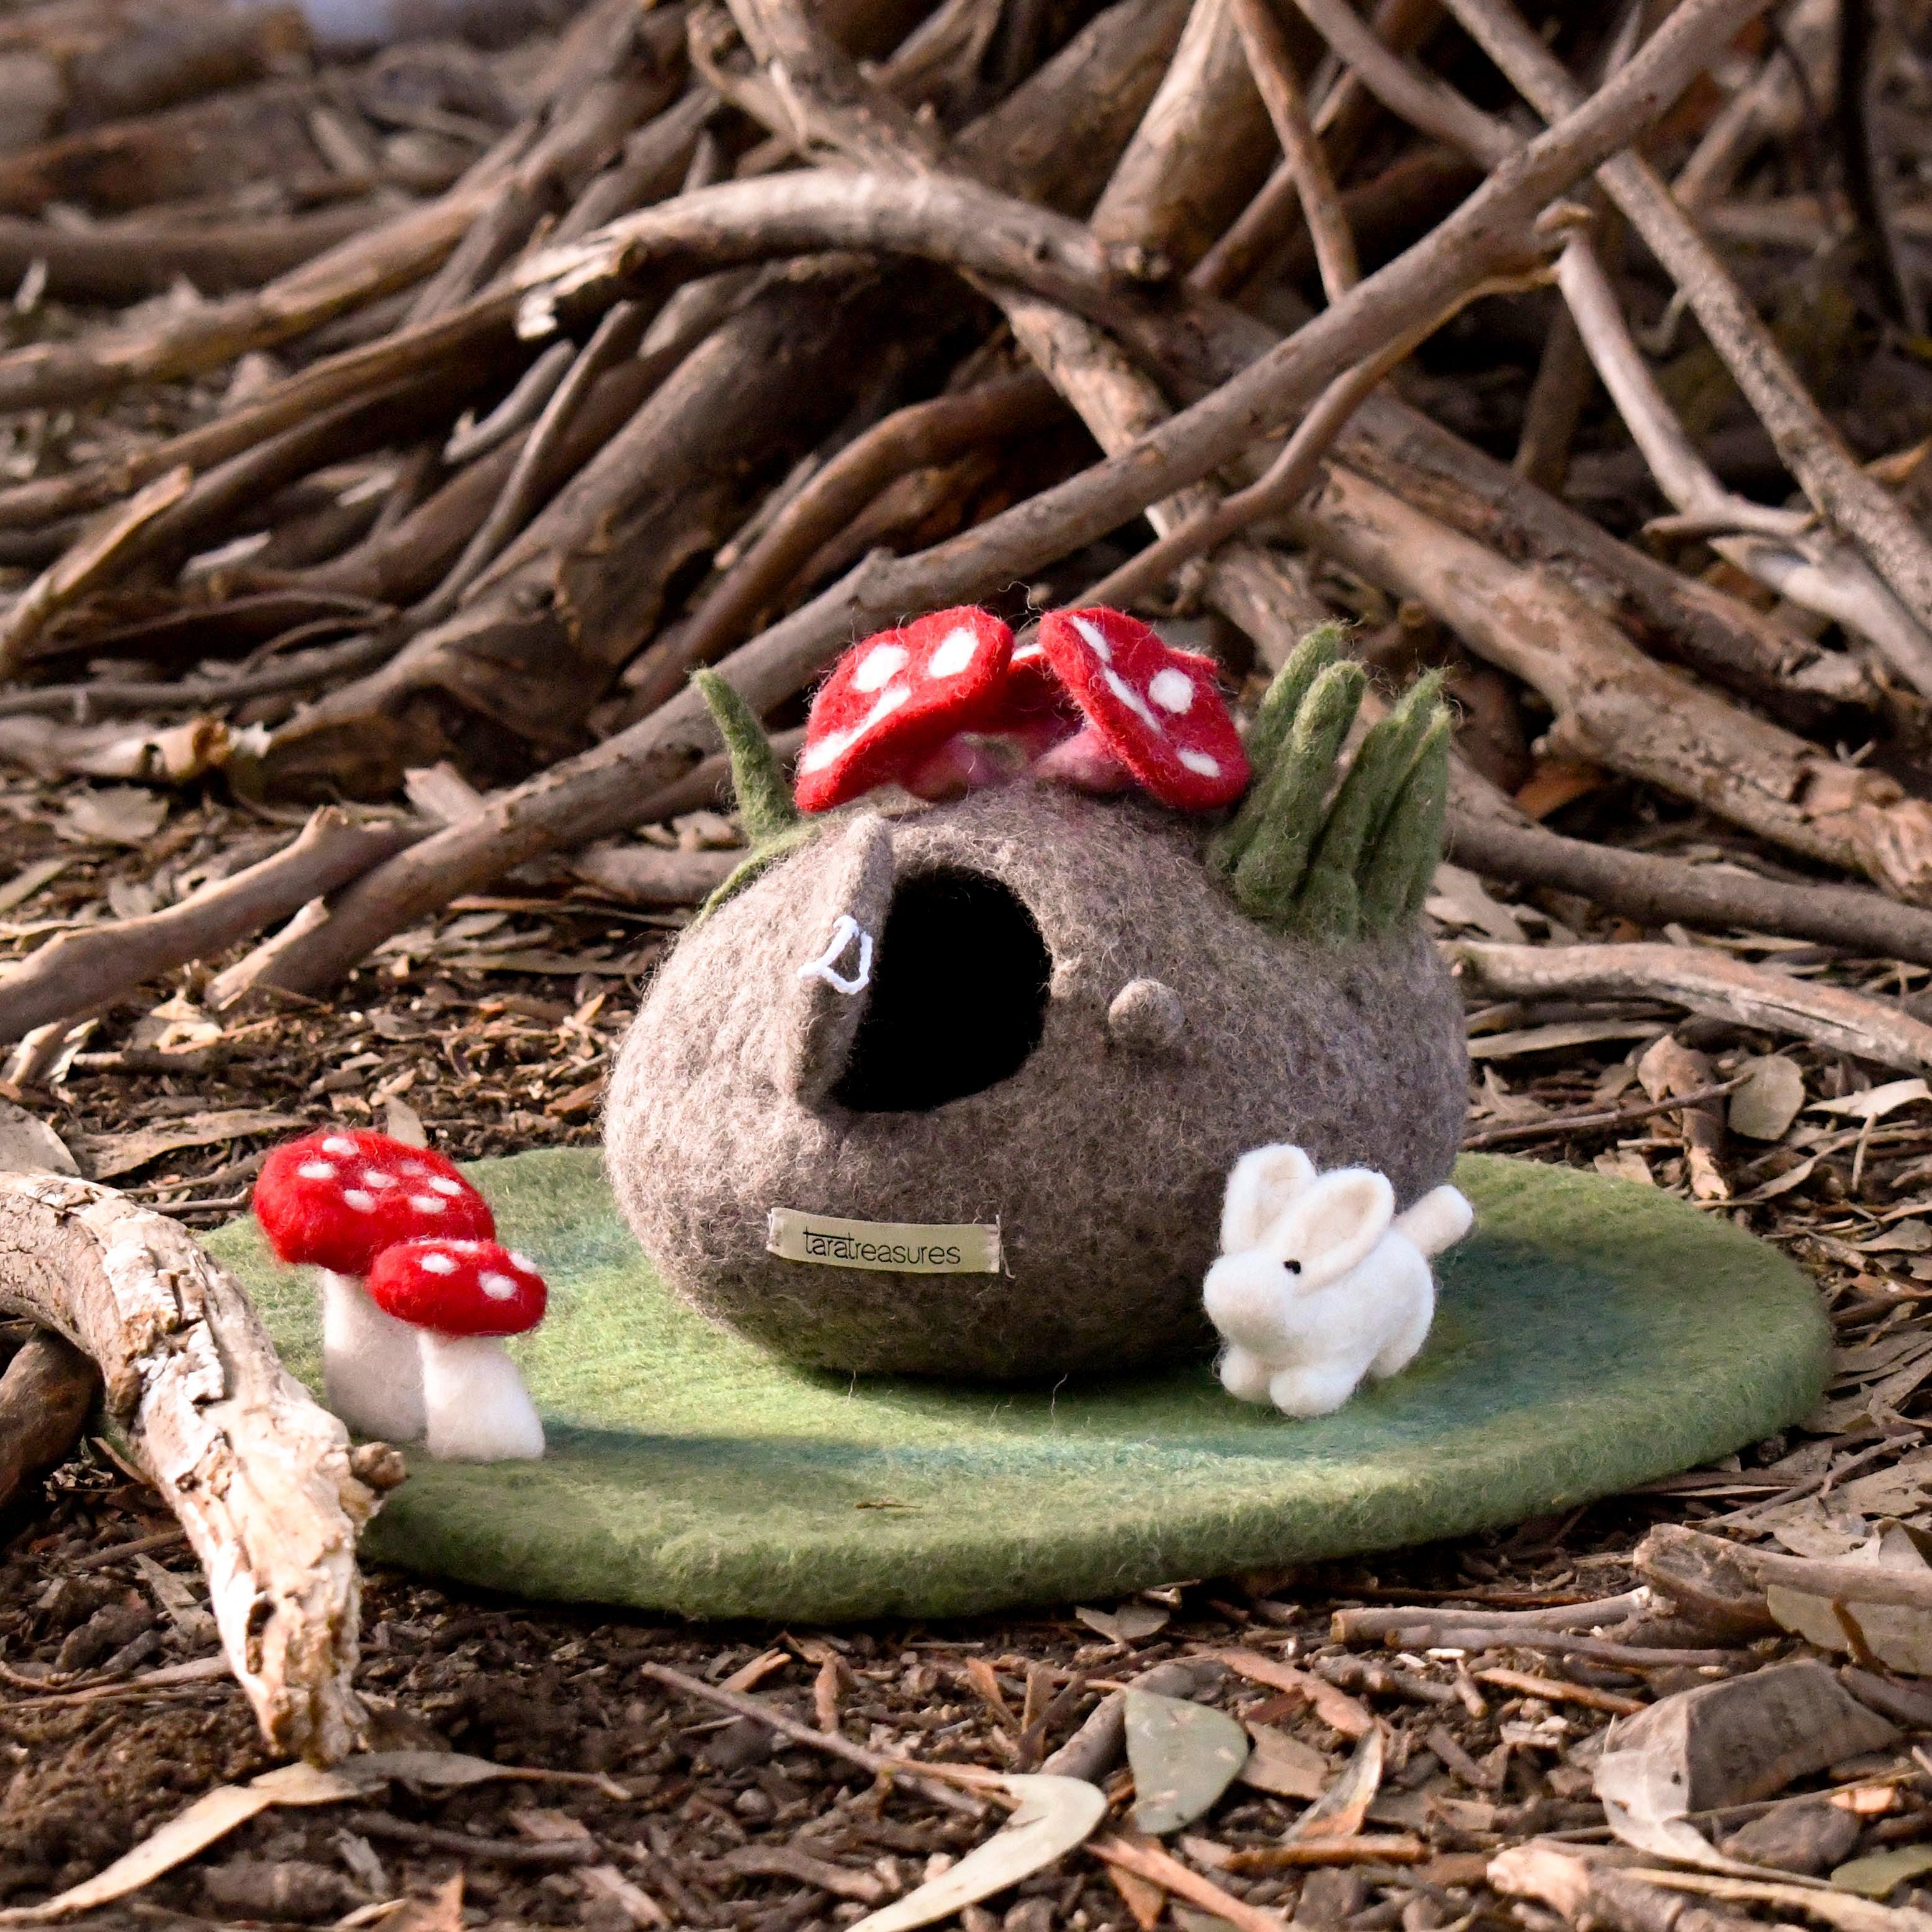 Toadstool Mushroom Play Mat Playscape - Tara Treasures